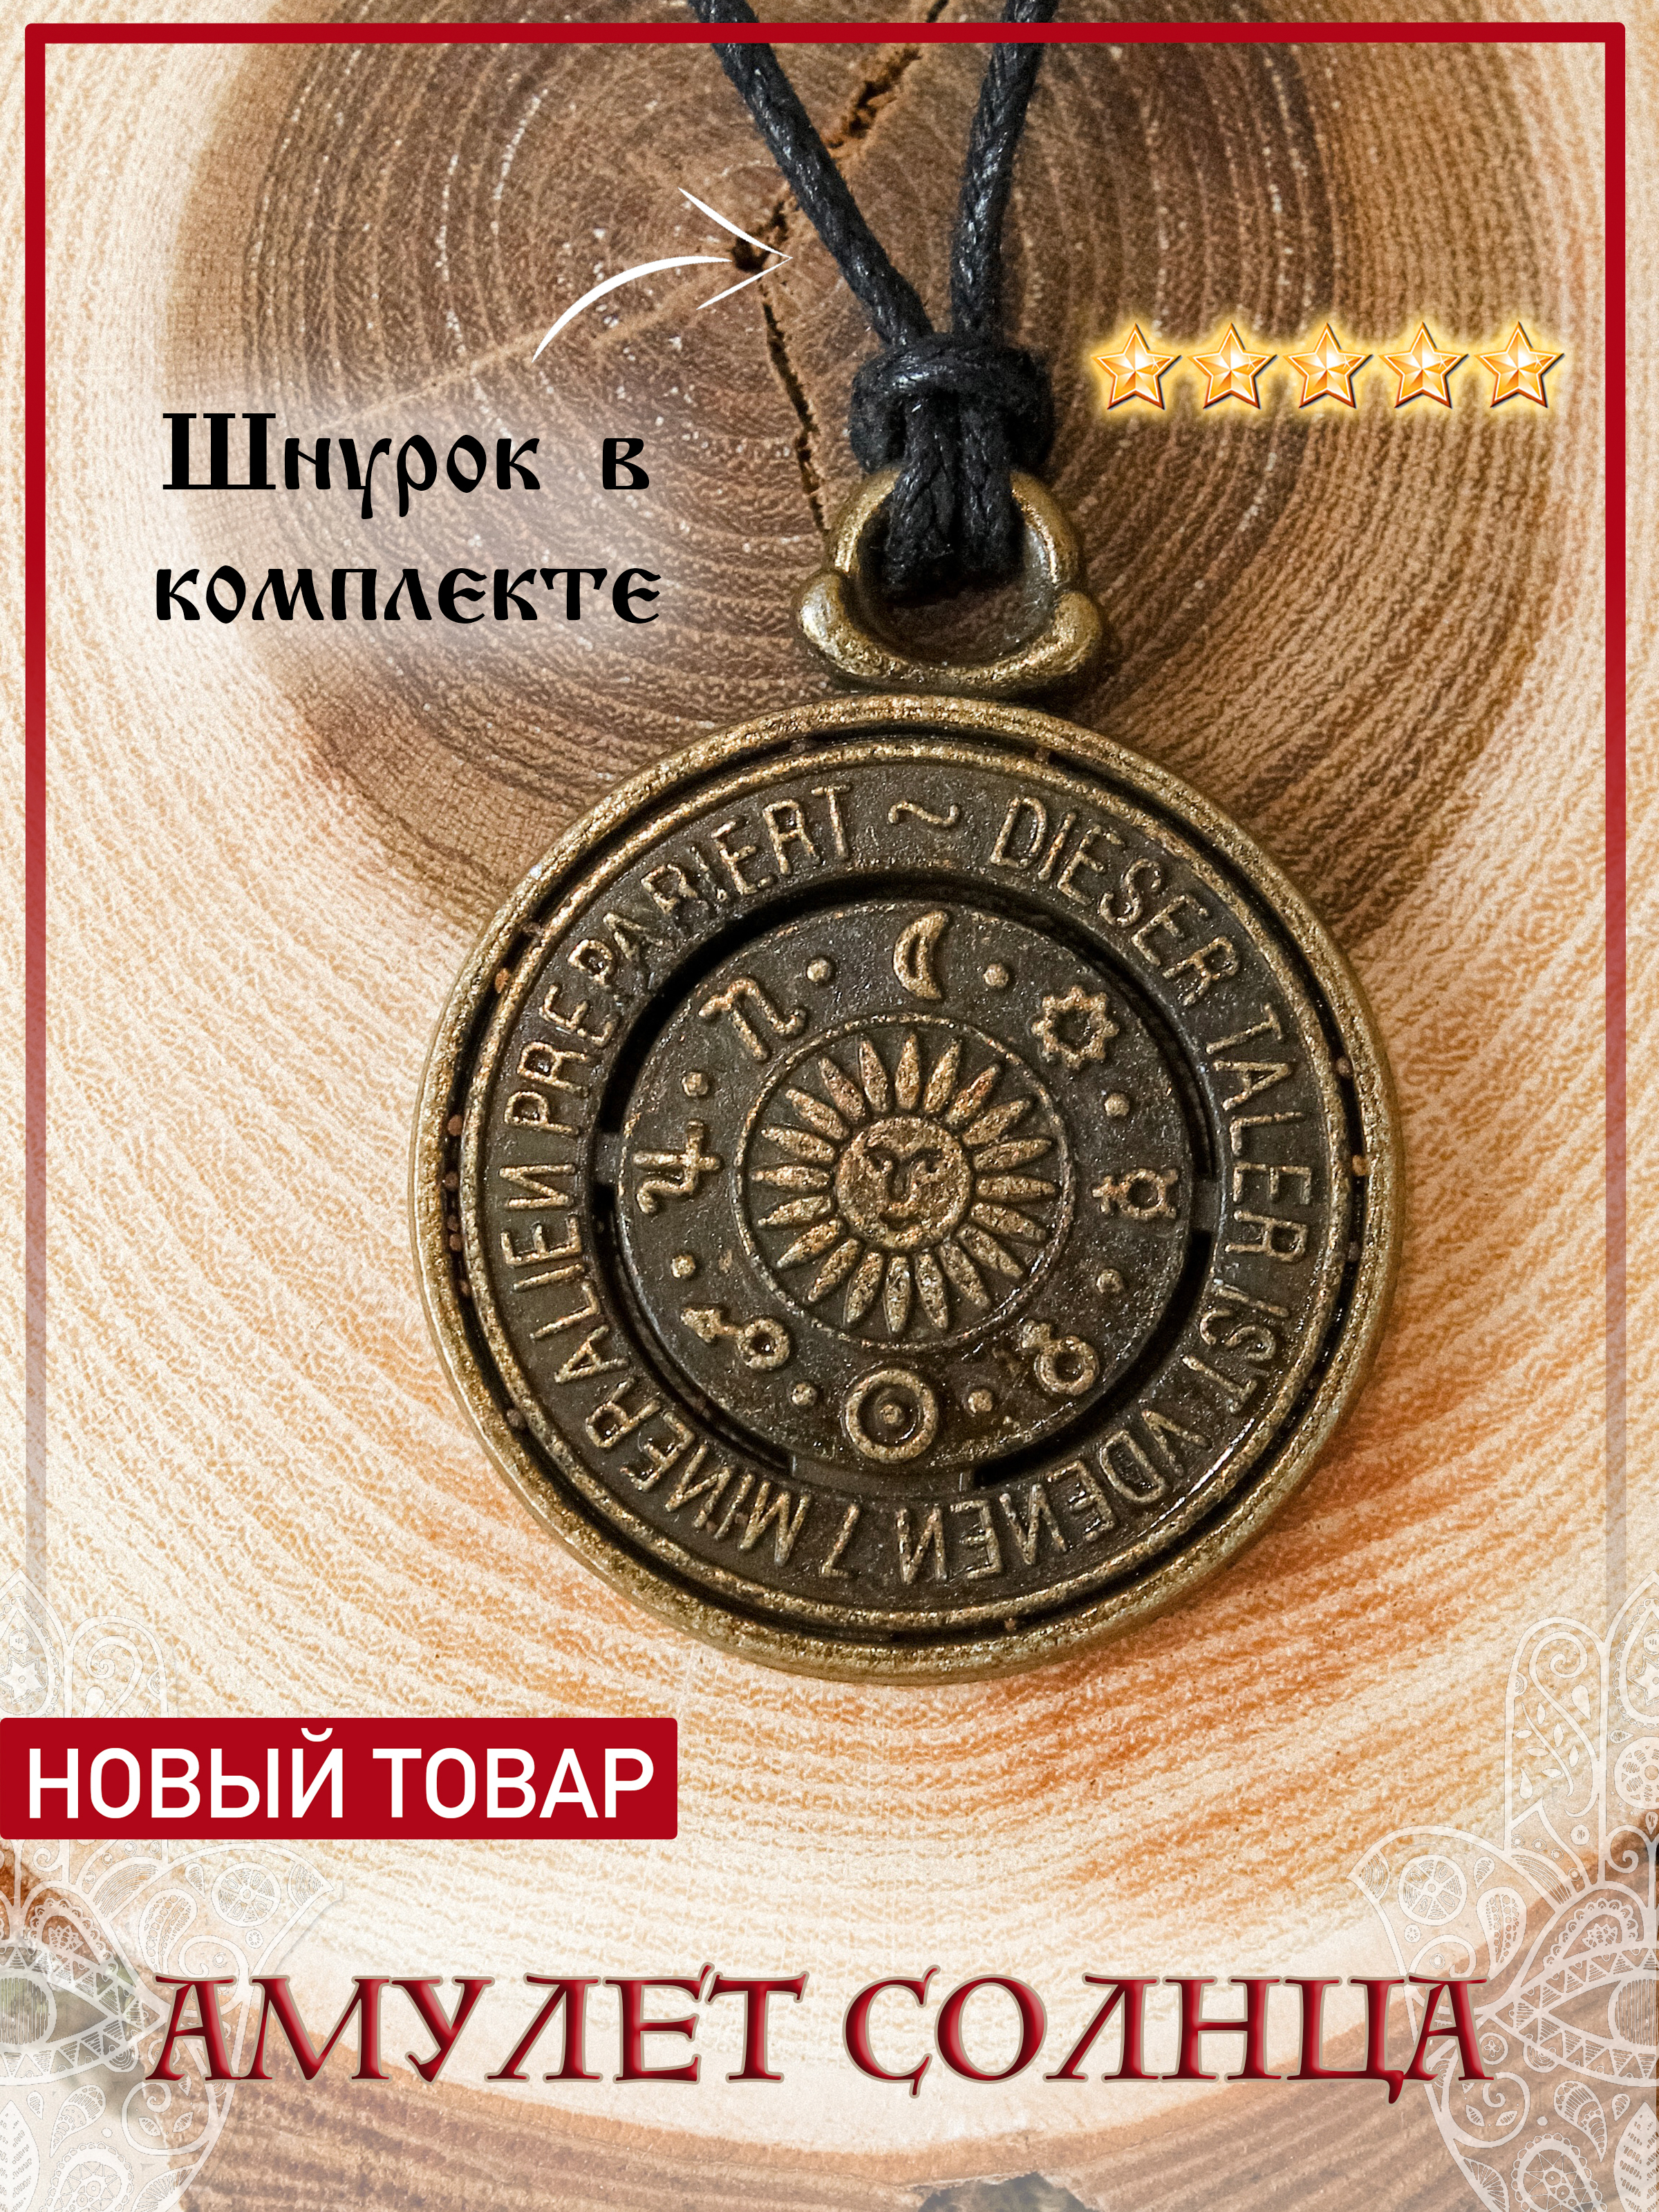 Не забывай свои корни: как выбрать славянский оберег из золота